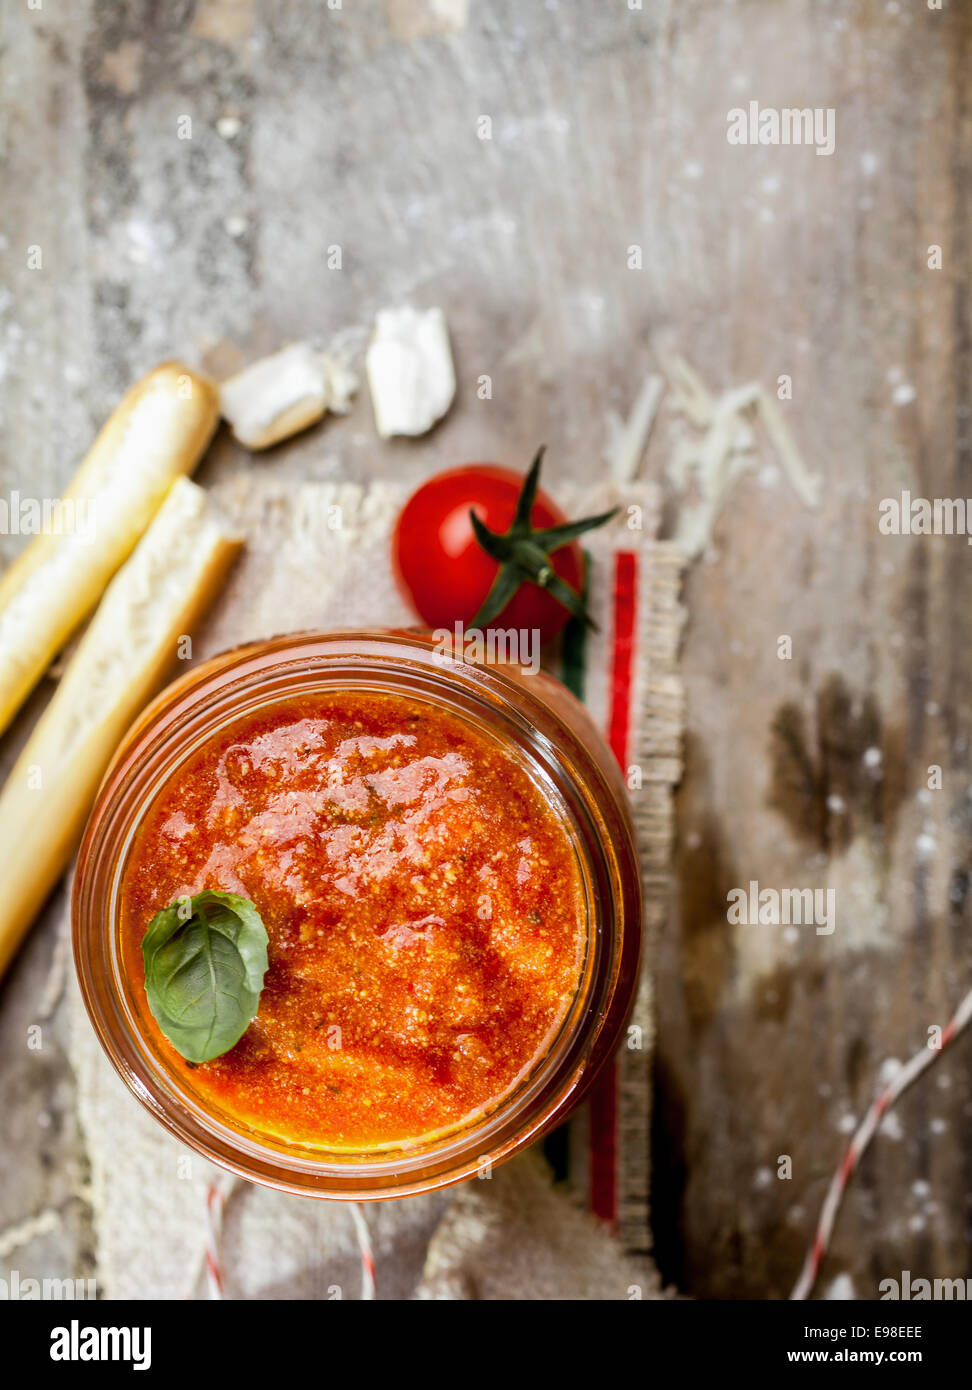 Vue de dessus d'un bocal en verre de hot spicy tomato relish avec grassini ou bâtonnets de pain italien sur un fond de bois rustique grungy avec copyspace Banque D'Images